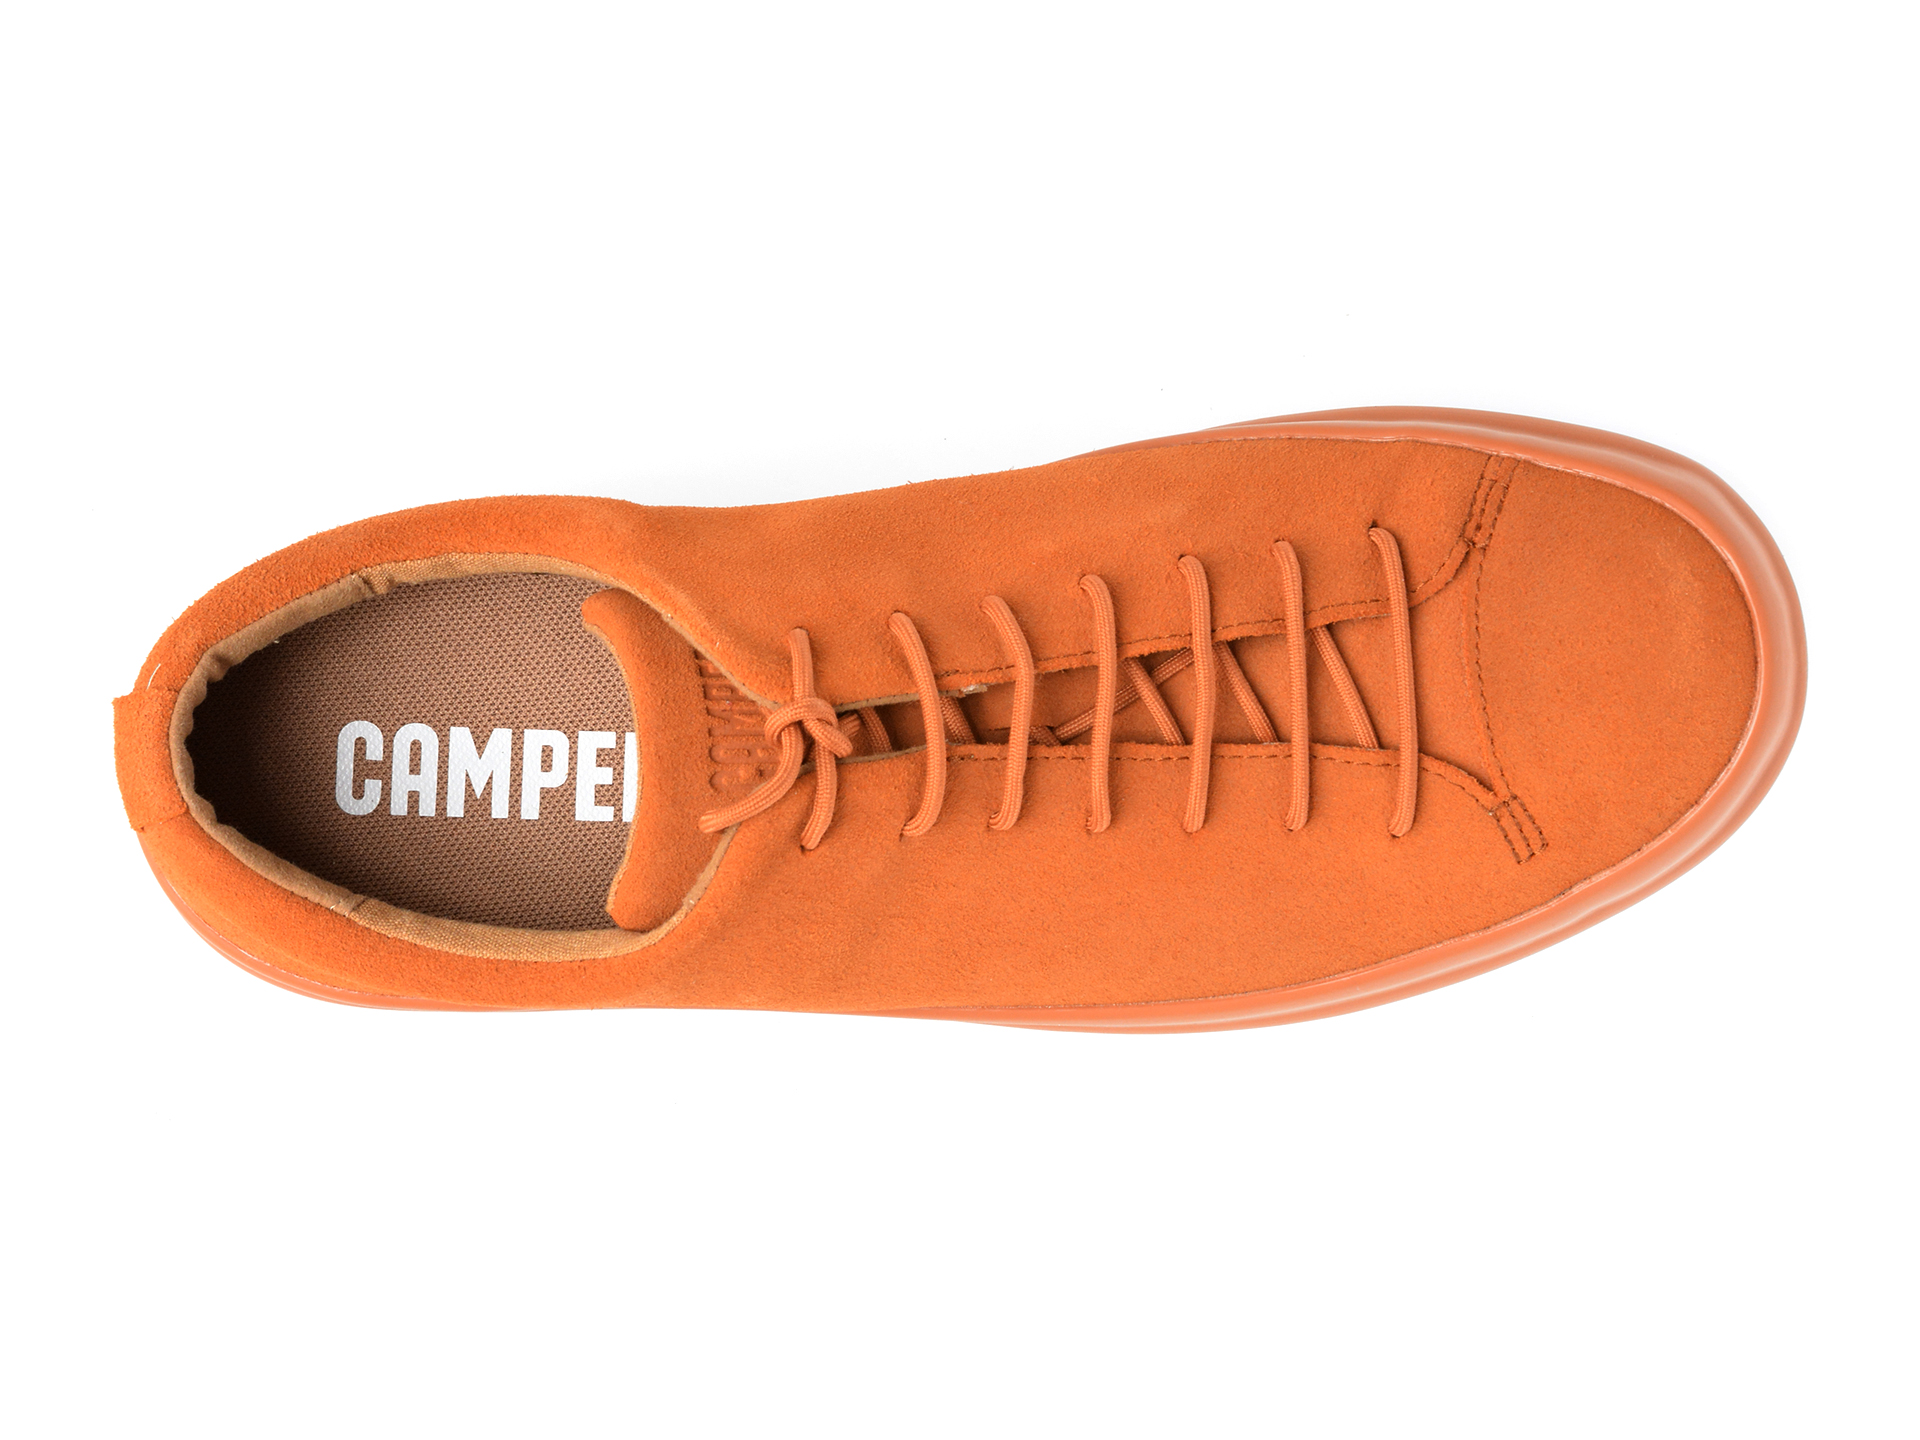 Poze Pantofi CAMPER maro, K100373, din piele naturala tezyo.ro